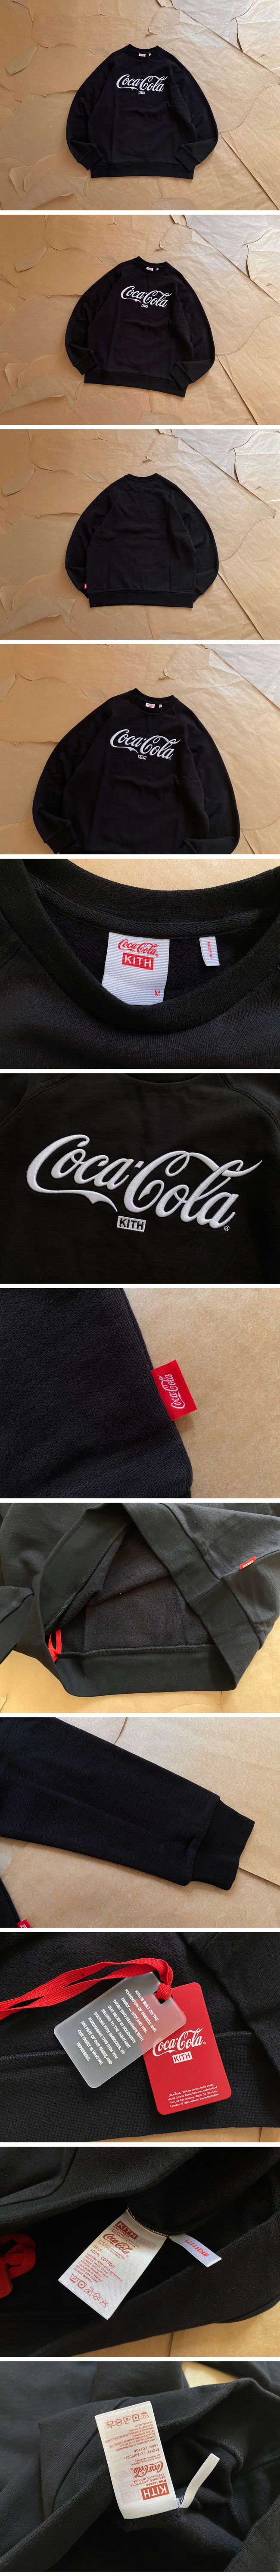 Kith x Coca-Cola Crewneck Sweat Shirt キス x コカ・コーラ クルーネック スウェット